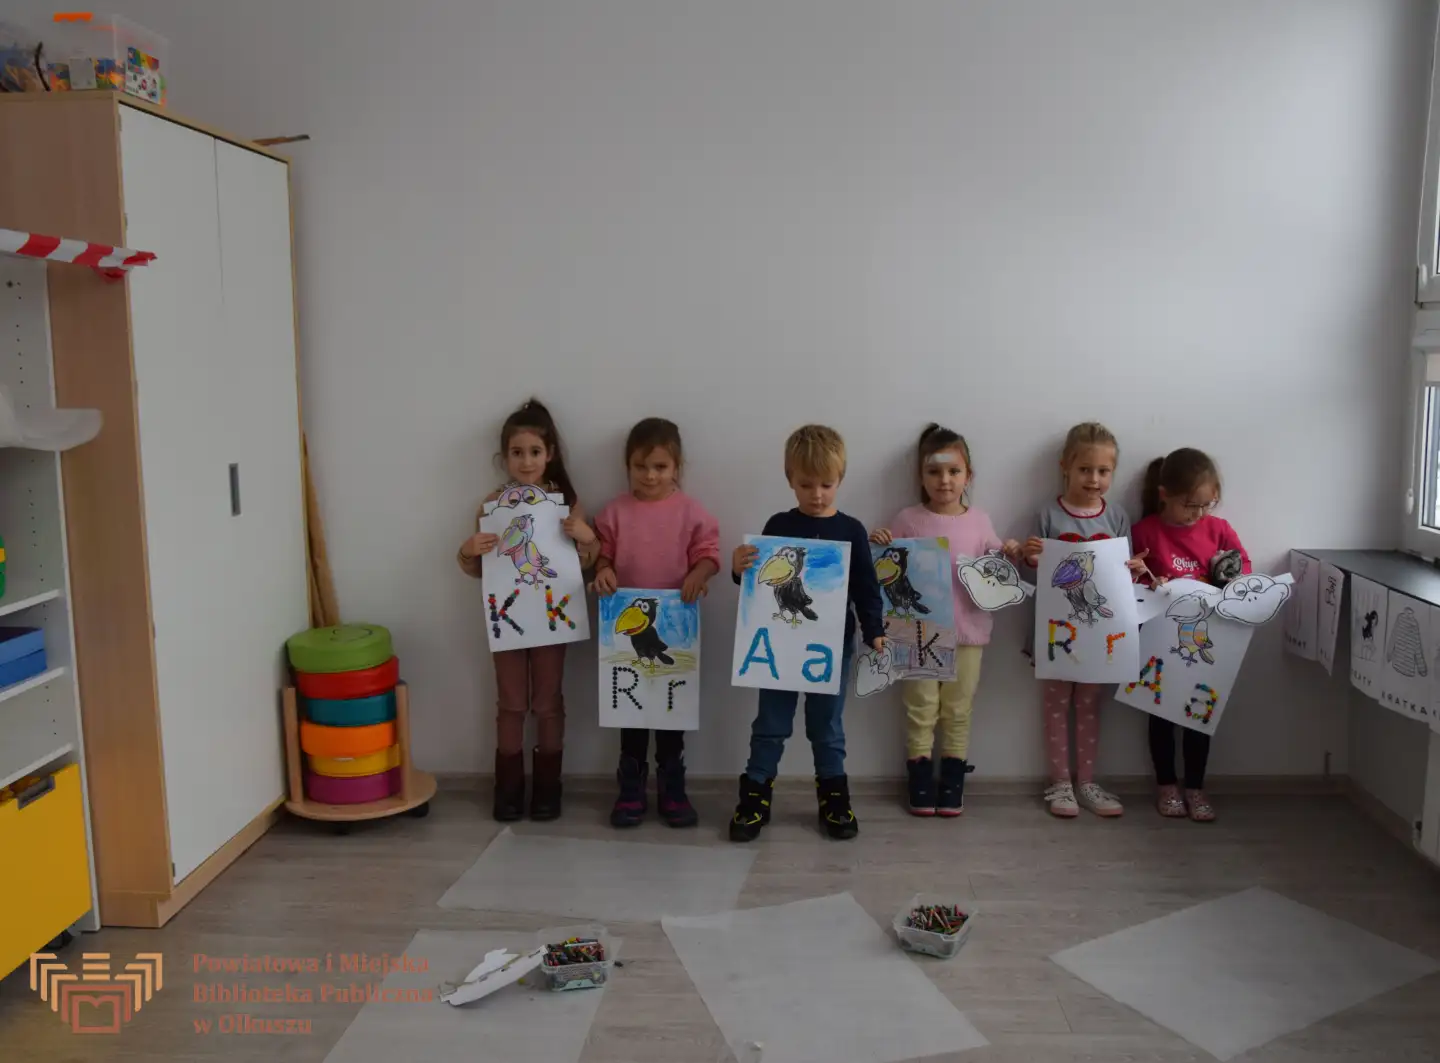 Zdjęcie przedstawia grupę dzieci, które pozującą do zdjęcia. Dzieci stoją pod białą ścianą i trzymają duże kartki. Na kartkach przedstawione są papugi i litery K, A, R wyklejone plasteliną.